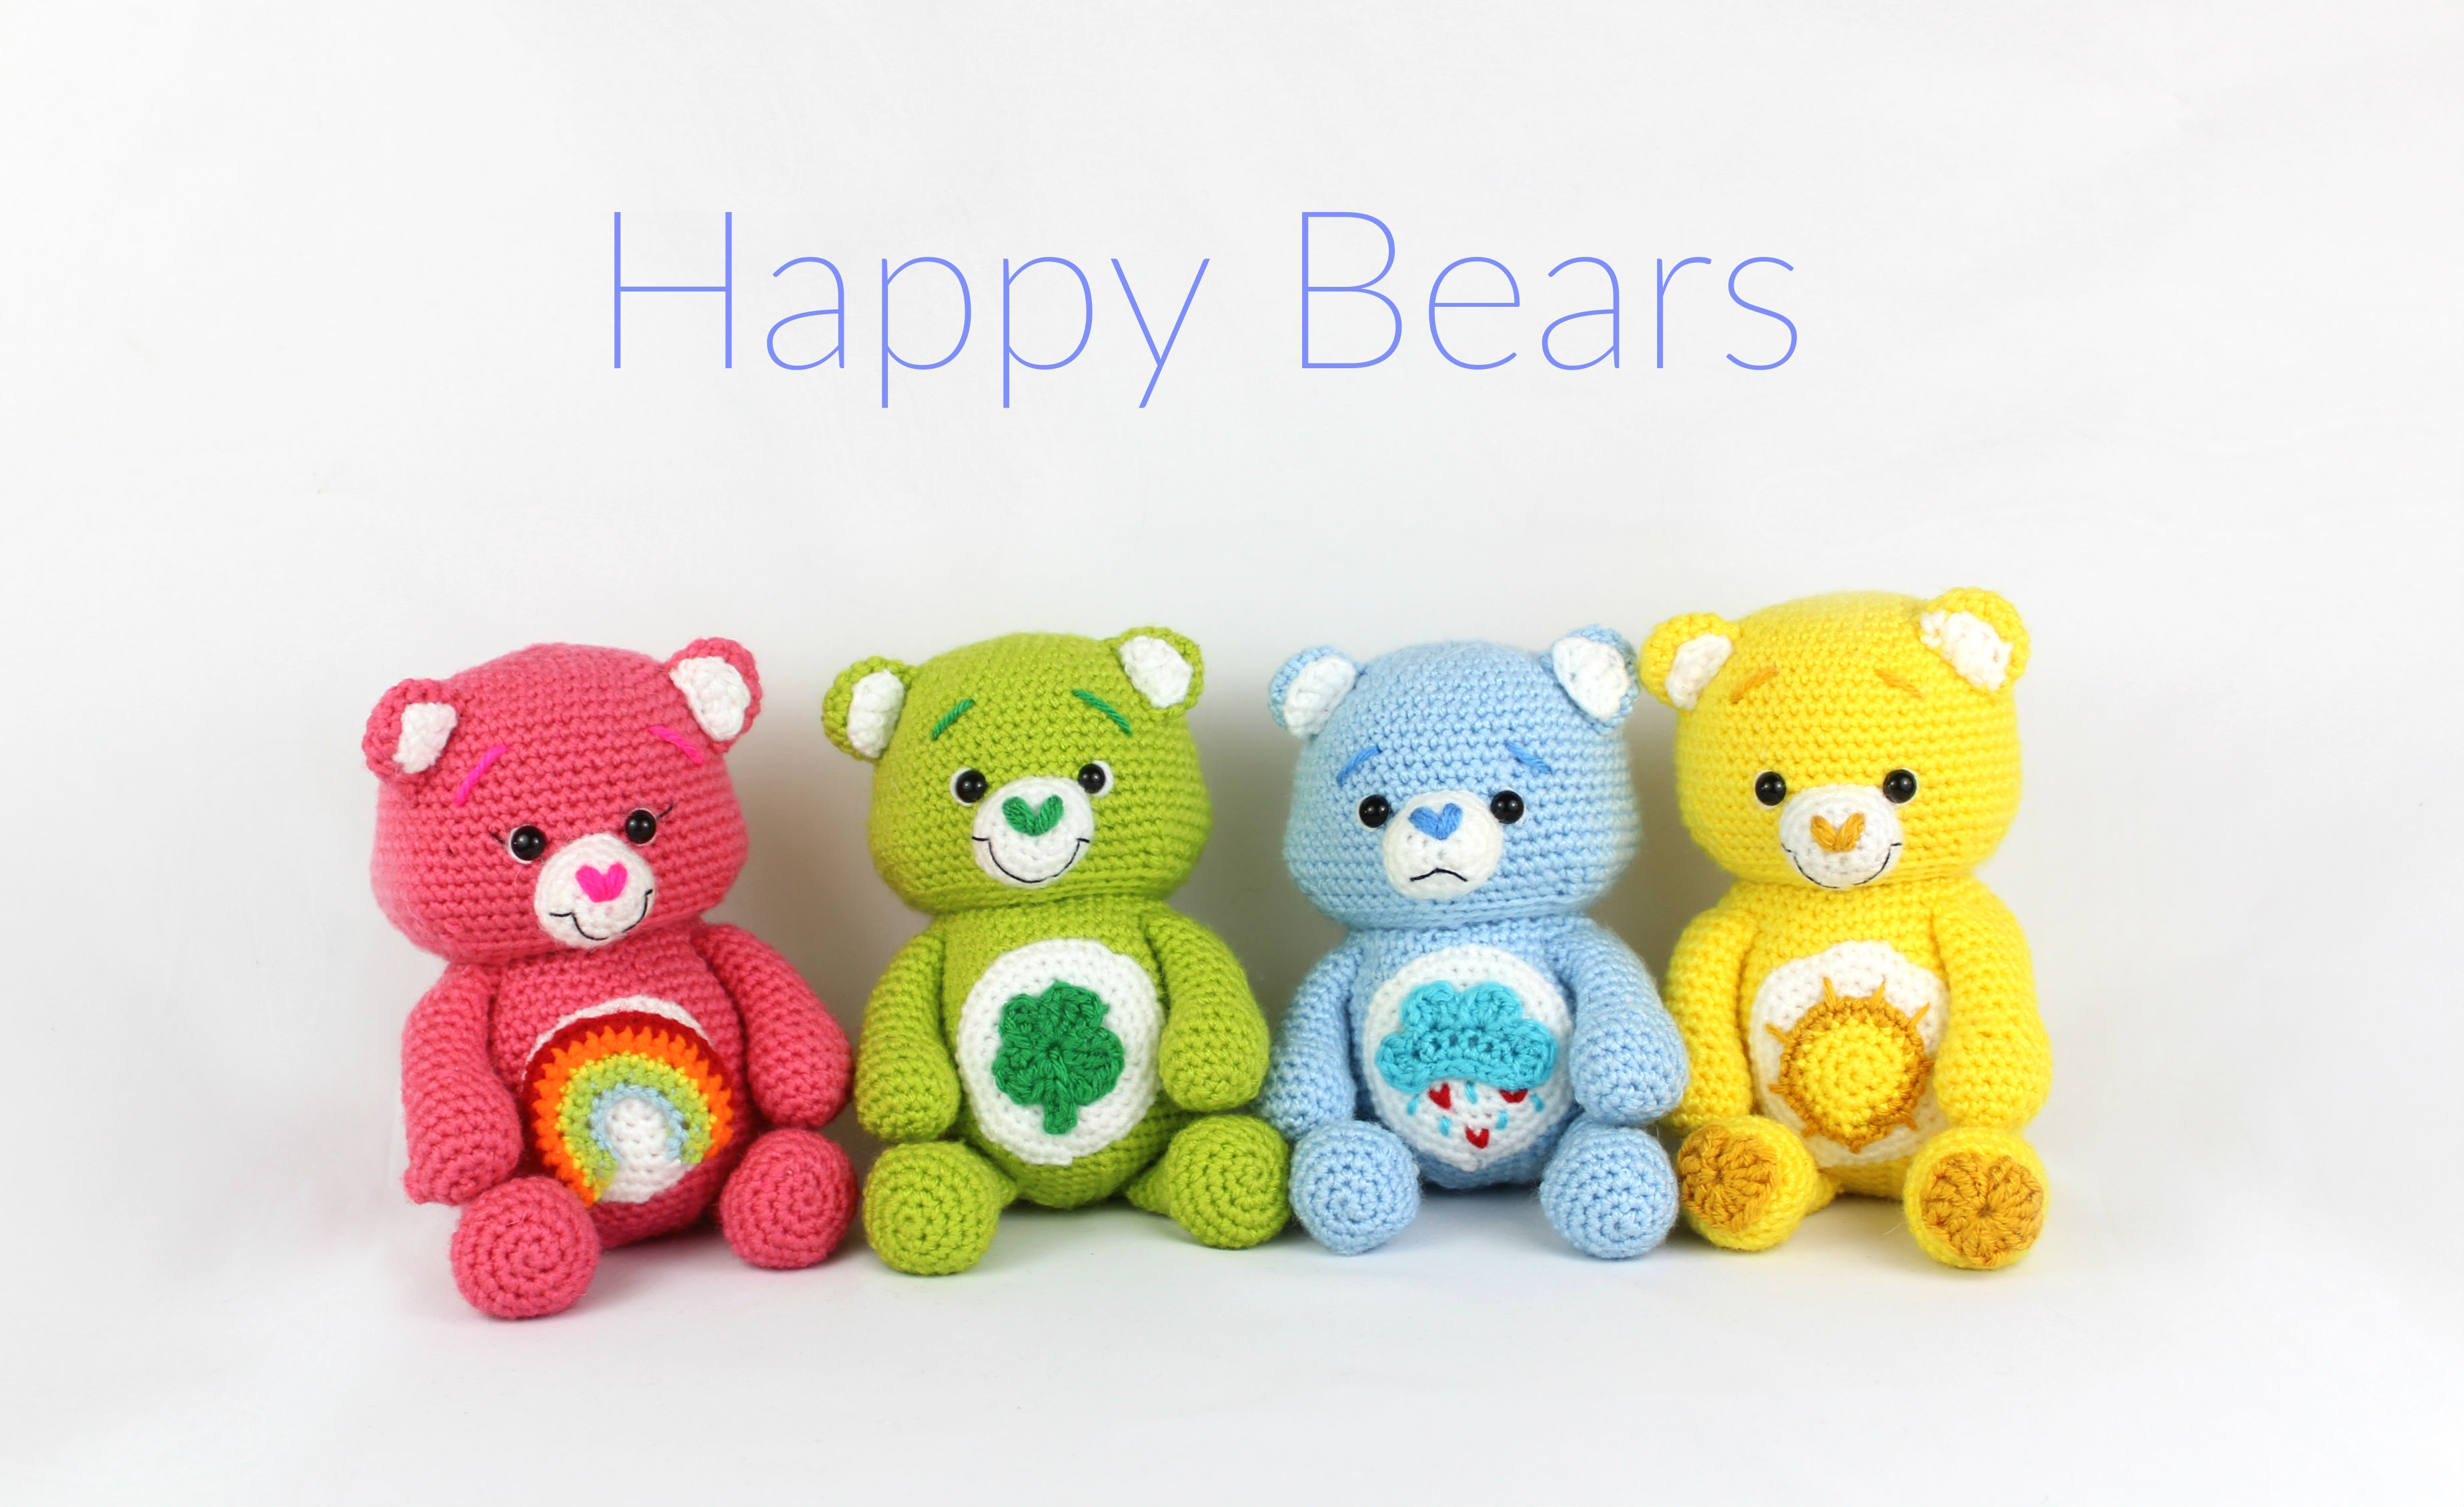 Bears are you happy. Happy Bear игрушка. Amigurumi Bear. STRINGYDINGDING. Care Bears Crochet.